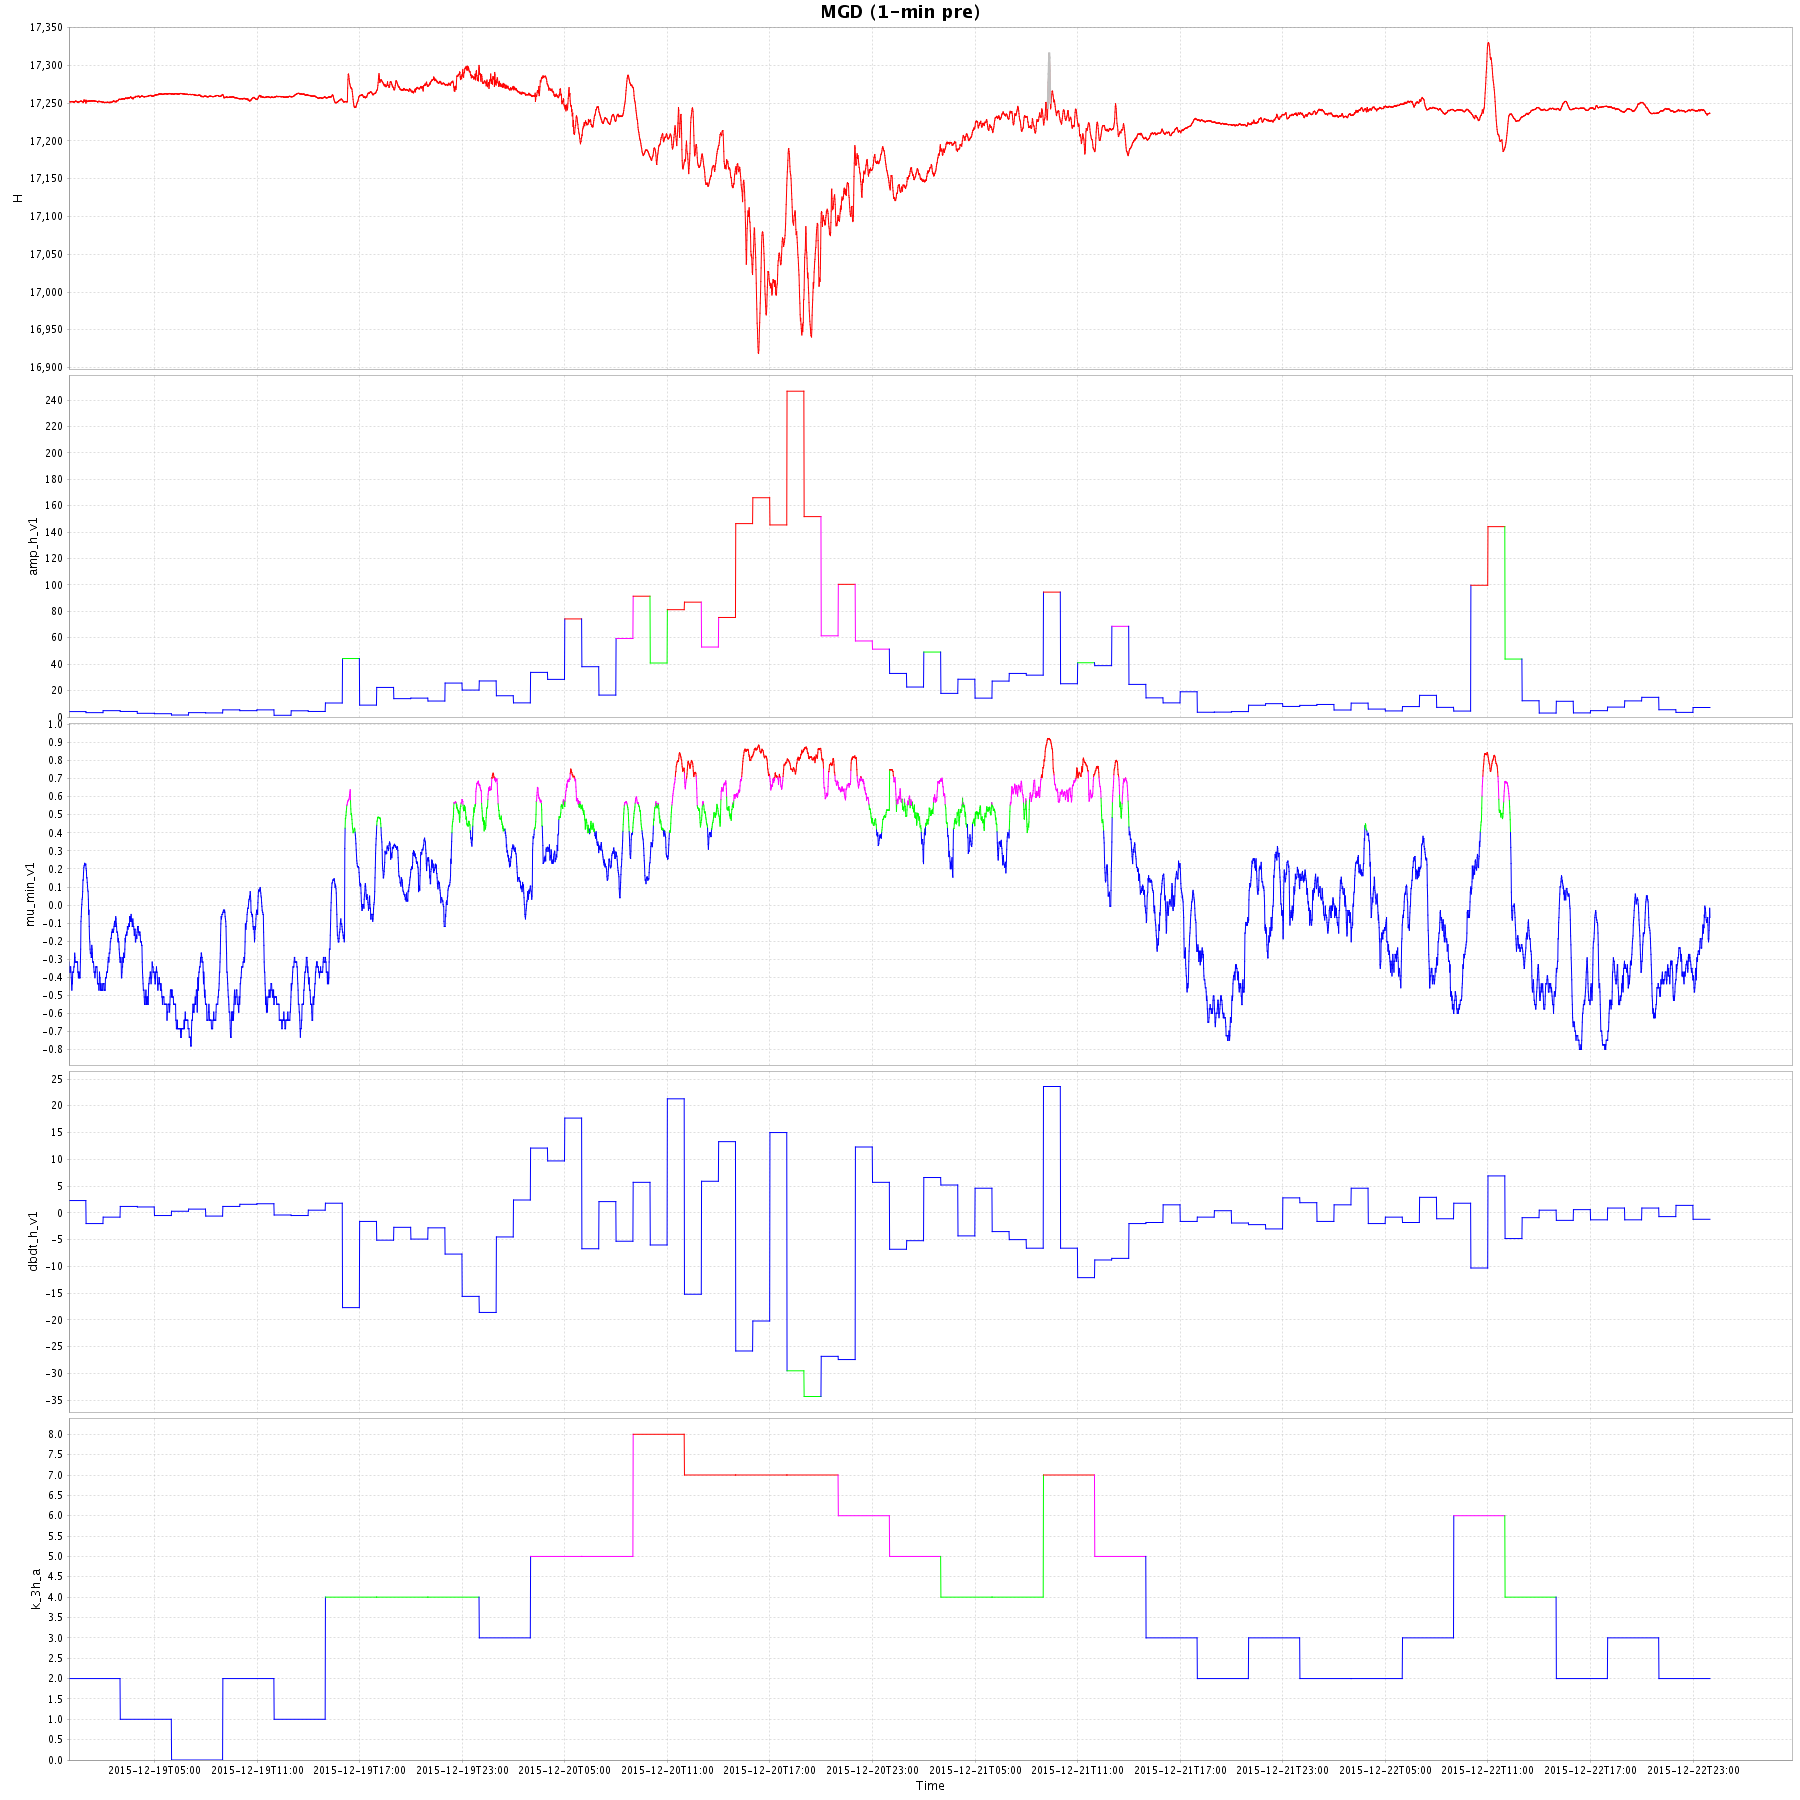 Результаты оперативного анализа геомагнитной активности на примере данных обсерватории "Магадан" во время магнитной бури 20 декабря 2015 года. Момент внезапного начала магнитной бури отмечен черной стрелкой (предоставлено ГЦ РАН). График - исходная магнитограмма горизонтальной составляющей магнитного поля. На втором графике (ниже) показана оценка часовых амплитуд геомагнитных возмущений. Третий график характеризует меру аномальности поля, построенную на принципах нечеткой математики. На четвертом графике представлена почасовая оценка скорости изменения магнитного поля. На нижнем графике показаны результаты оперативного расчета K-индекса геомагнитной активности. На графиках перечисленных индикаторов геомагнитной активности красным цветом отмечены сильно аномальные значения, фиолетовым - аномальные значения, зеленым - слабо аномальные значения и синим - фоновые значения 
